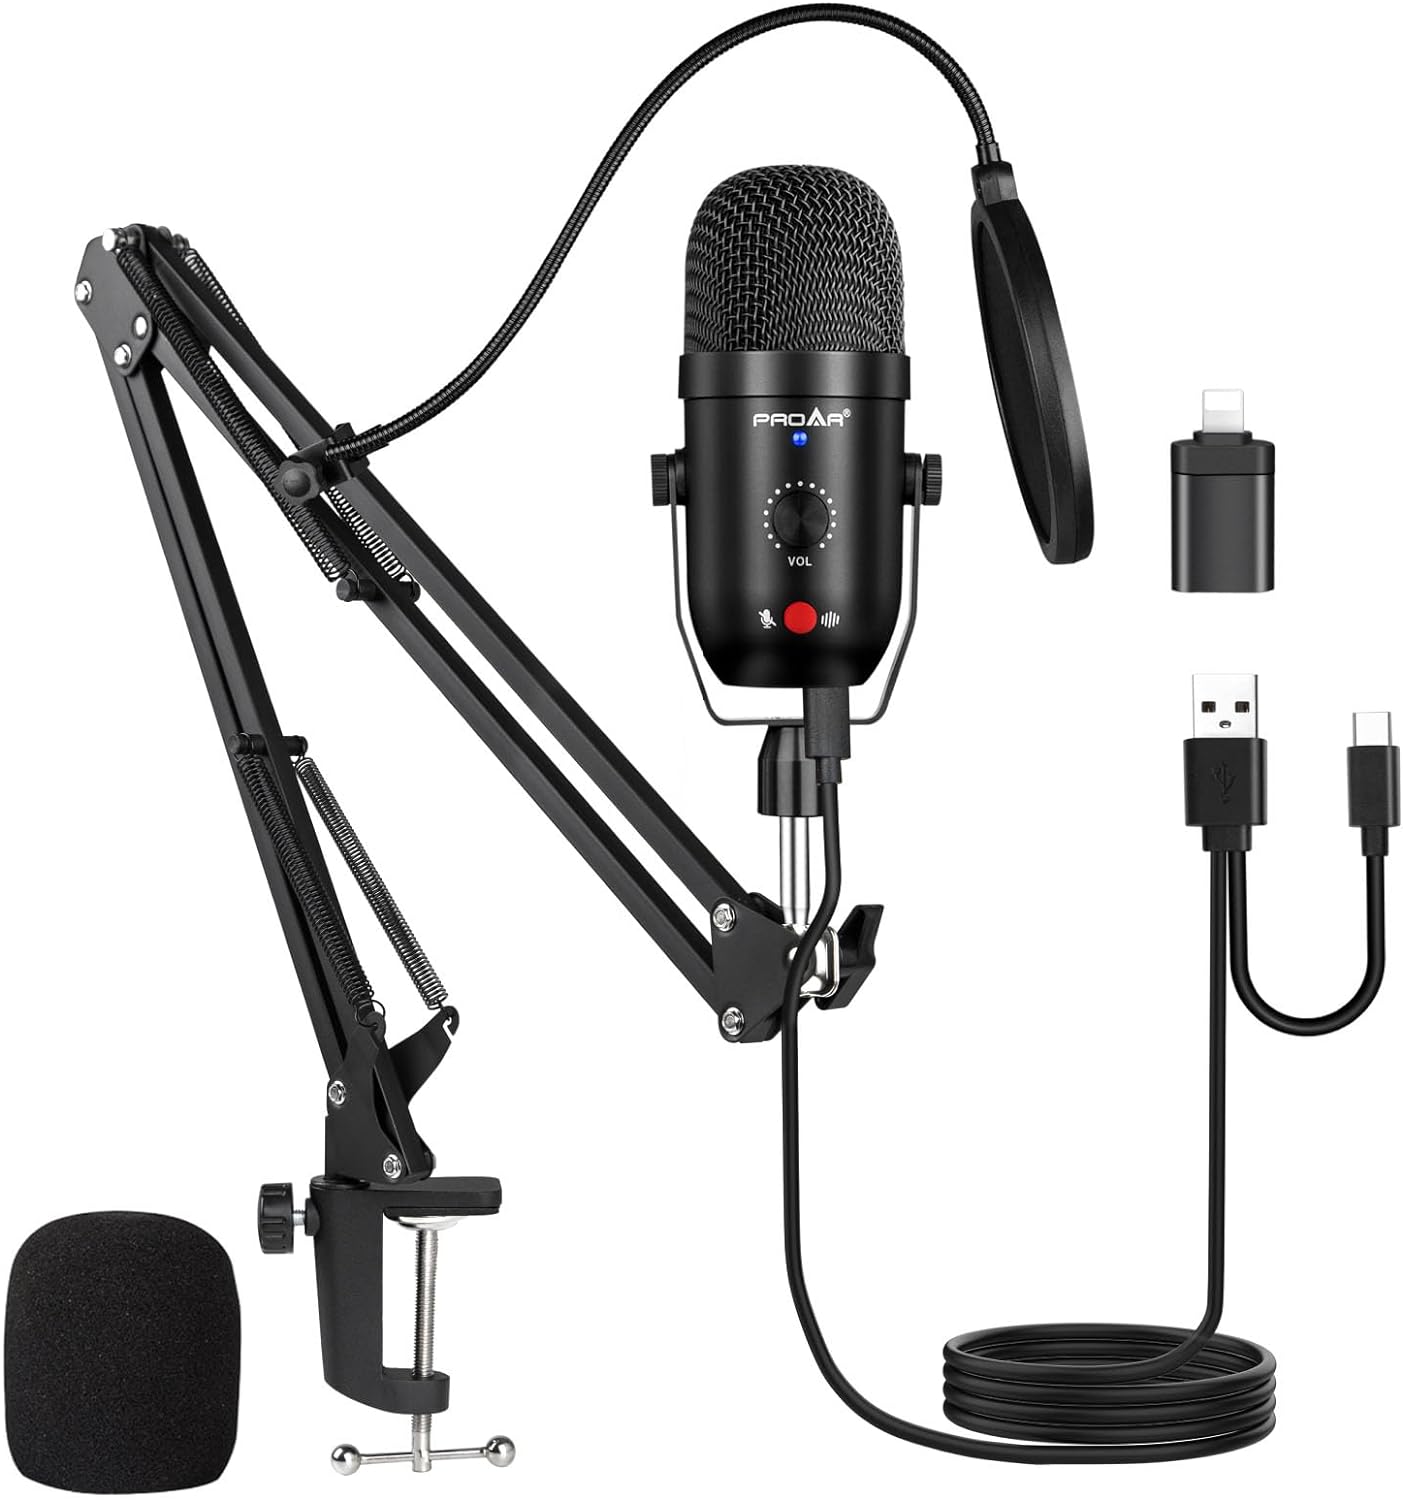 Vista superior del micrófono asmr con objetos para sonido.